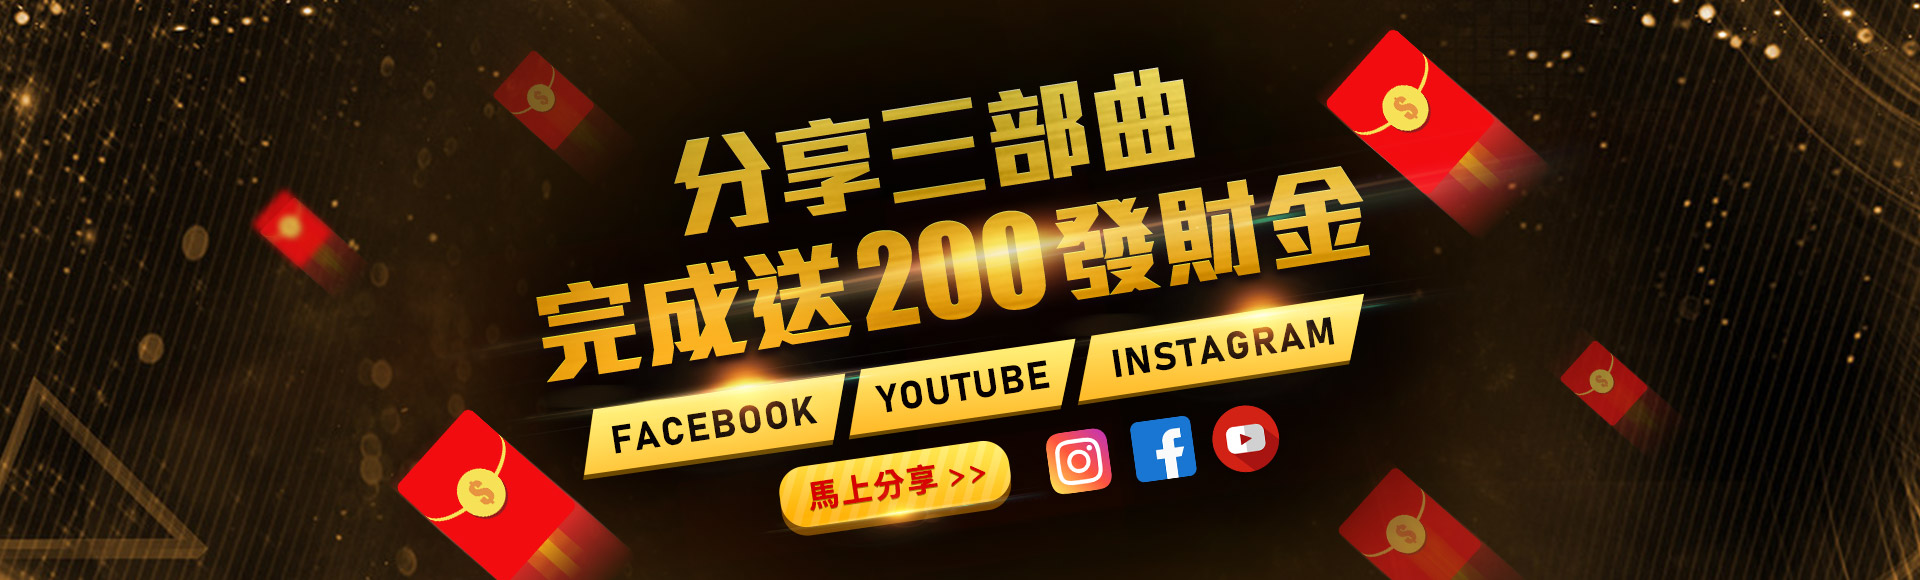 QQ9娛樂城-分享三部曲送你200娛樂城體驗金